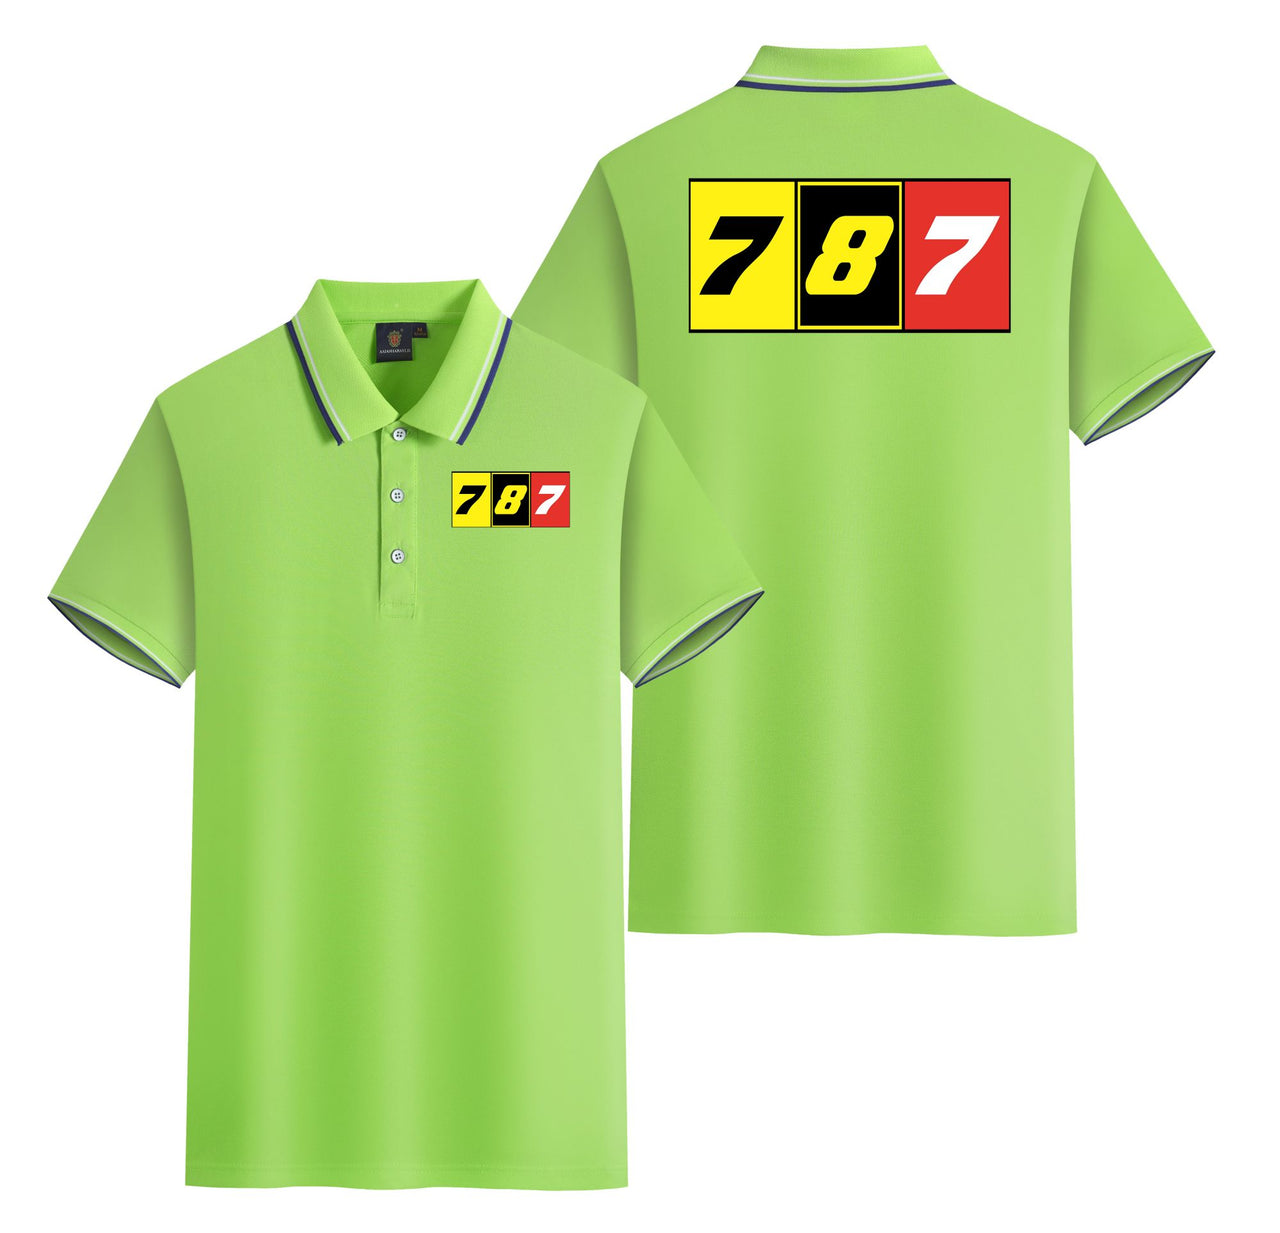 Flat Colourful 787 Designed Stylish Polo T-Shirts (Double-Side)